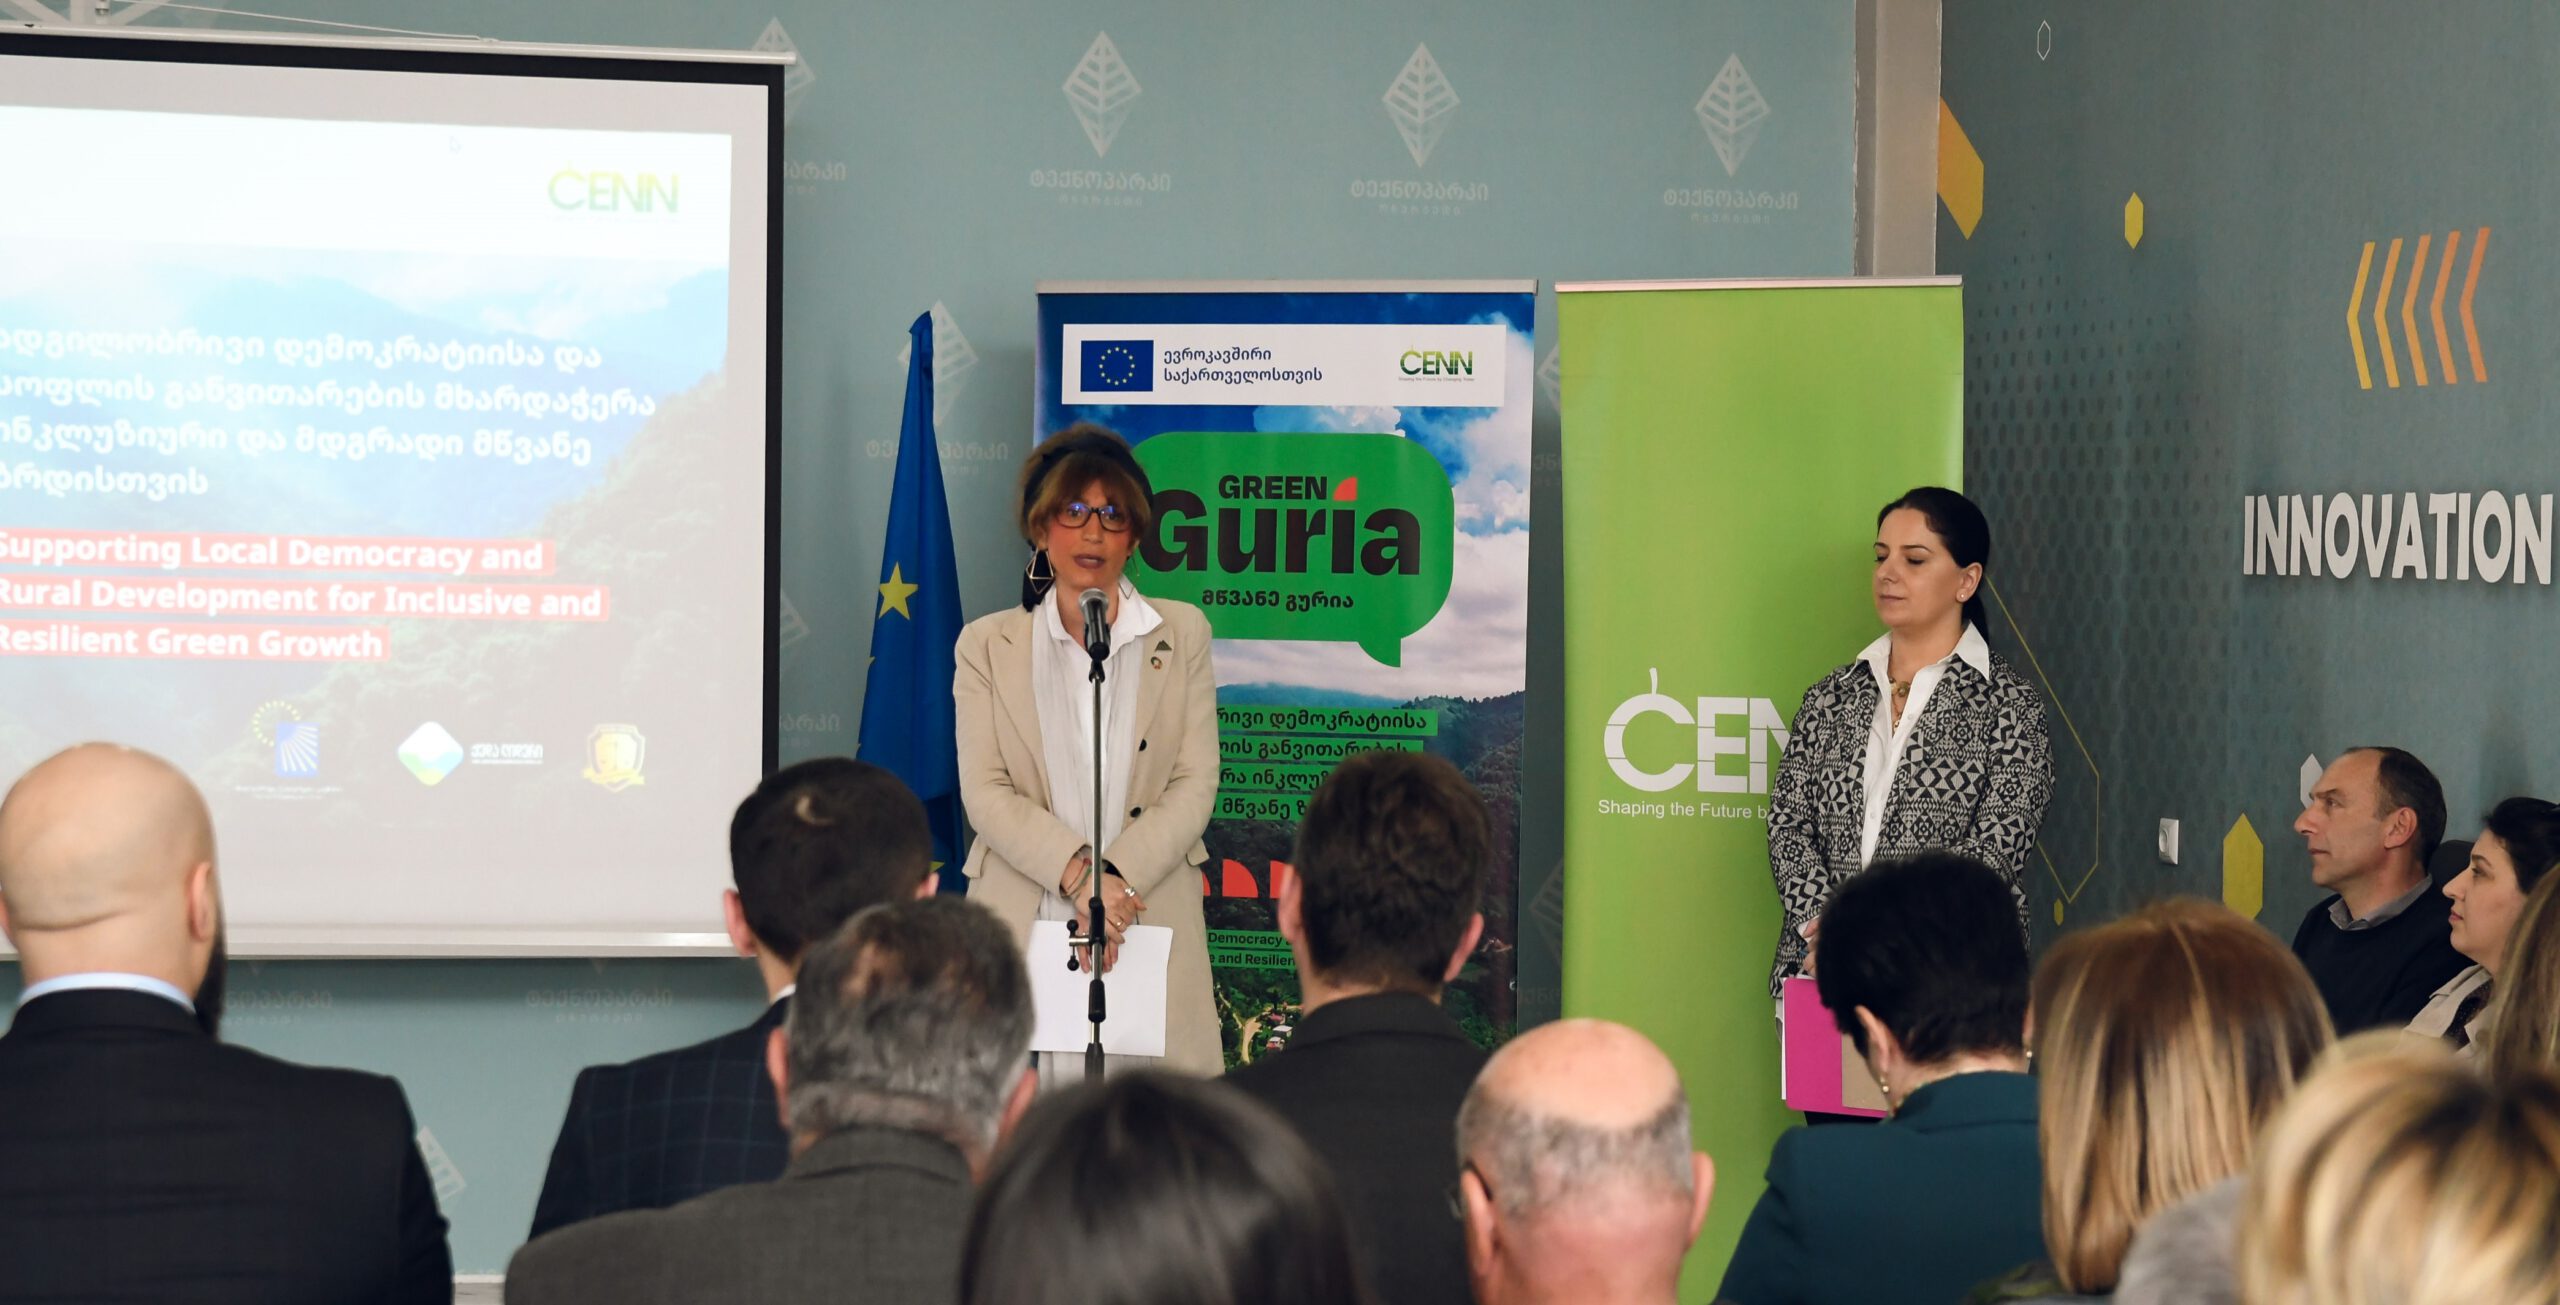 CENN-მა გურიაში ევროკავშირის დაფინანსებით სოფლის განვითარების ახალი პროექტი დაიწყო